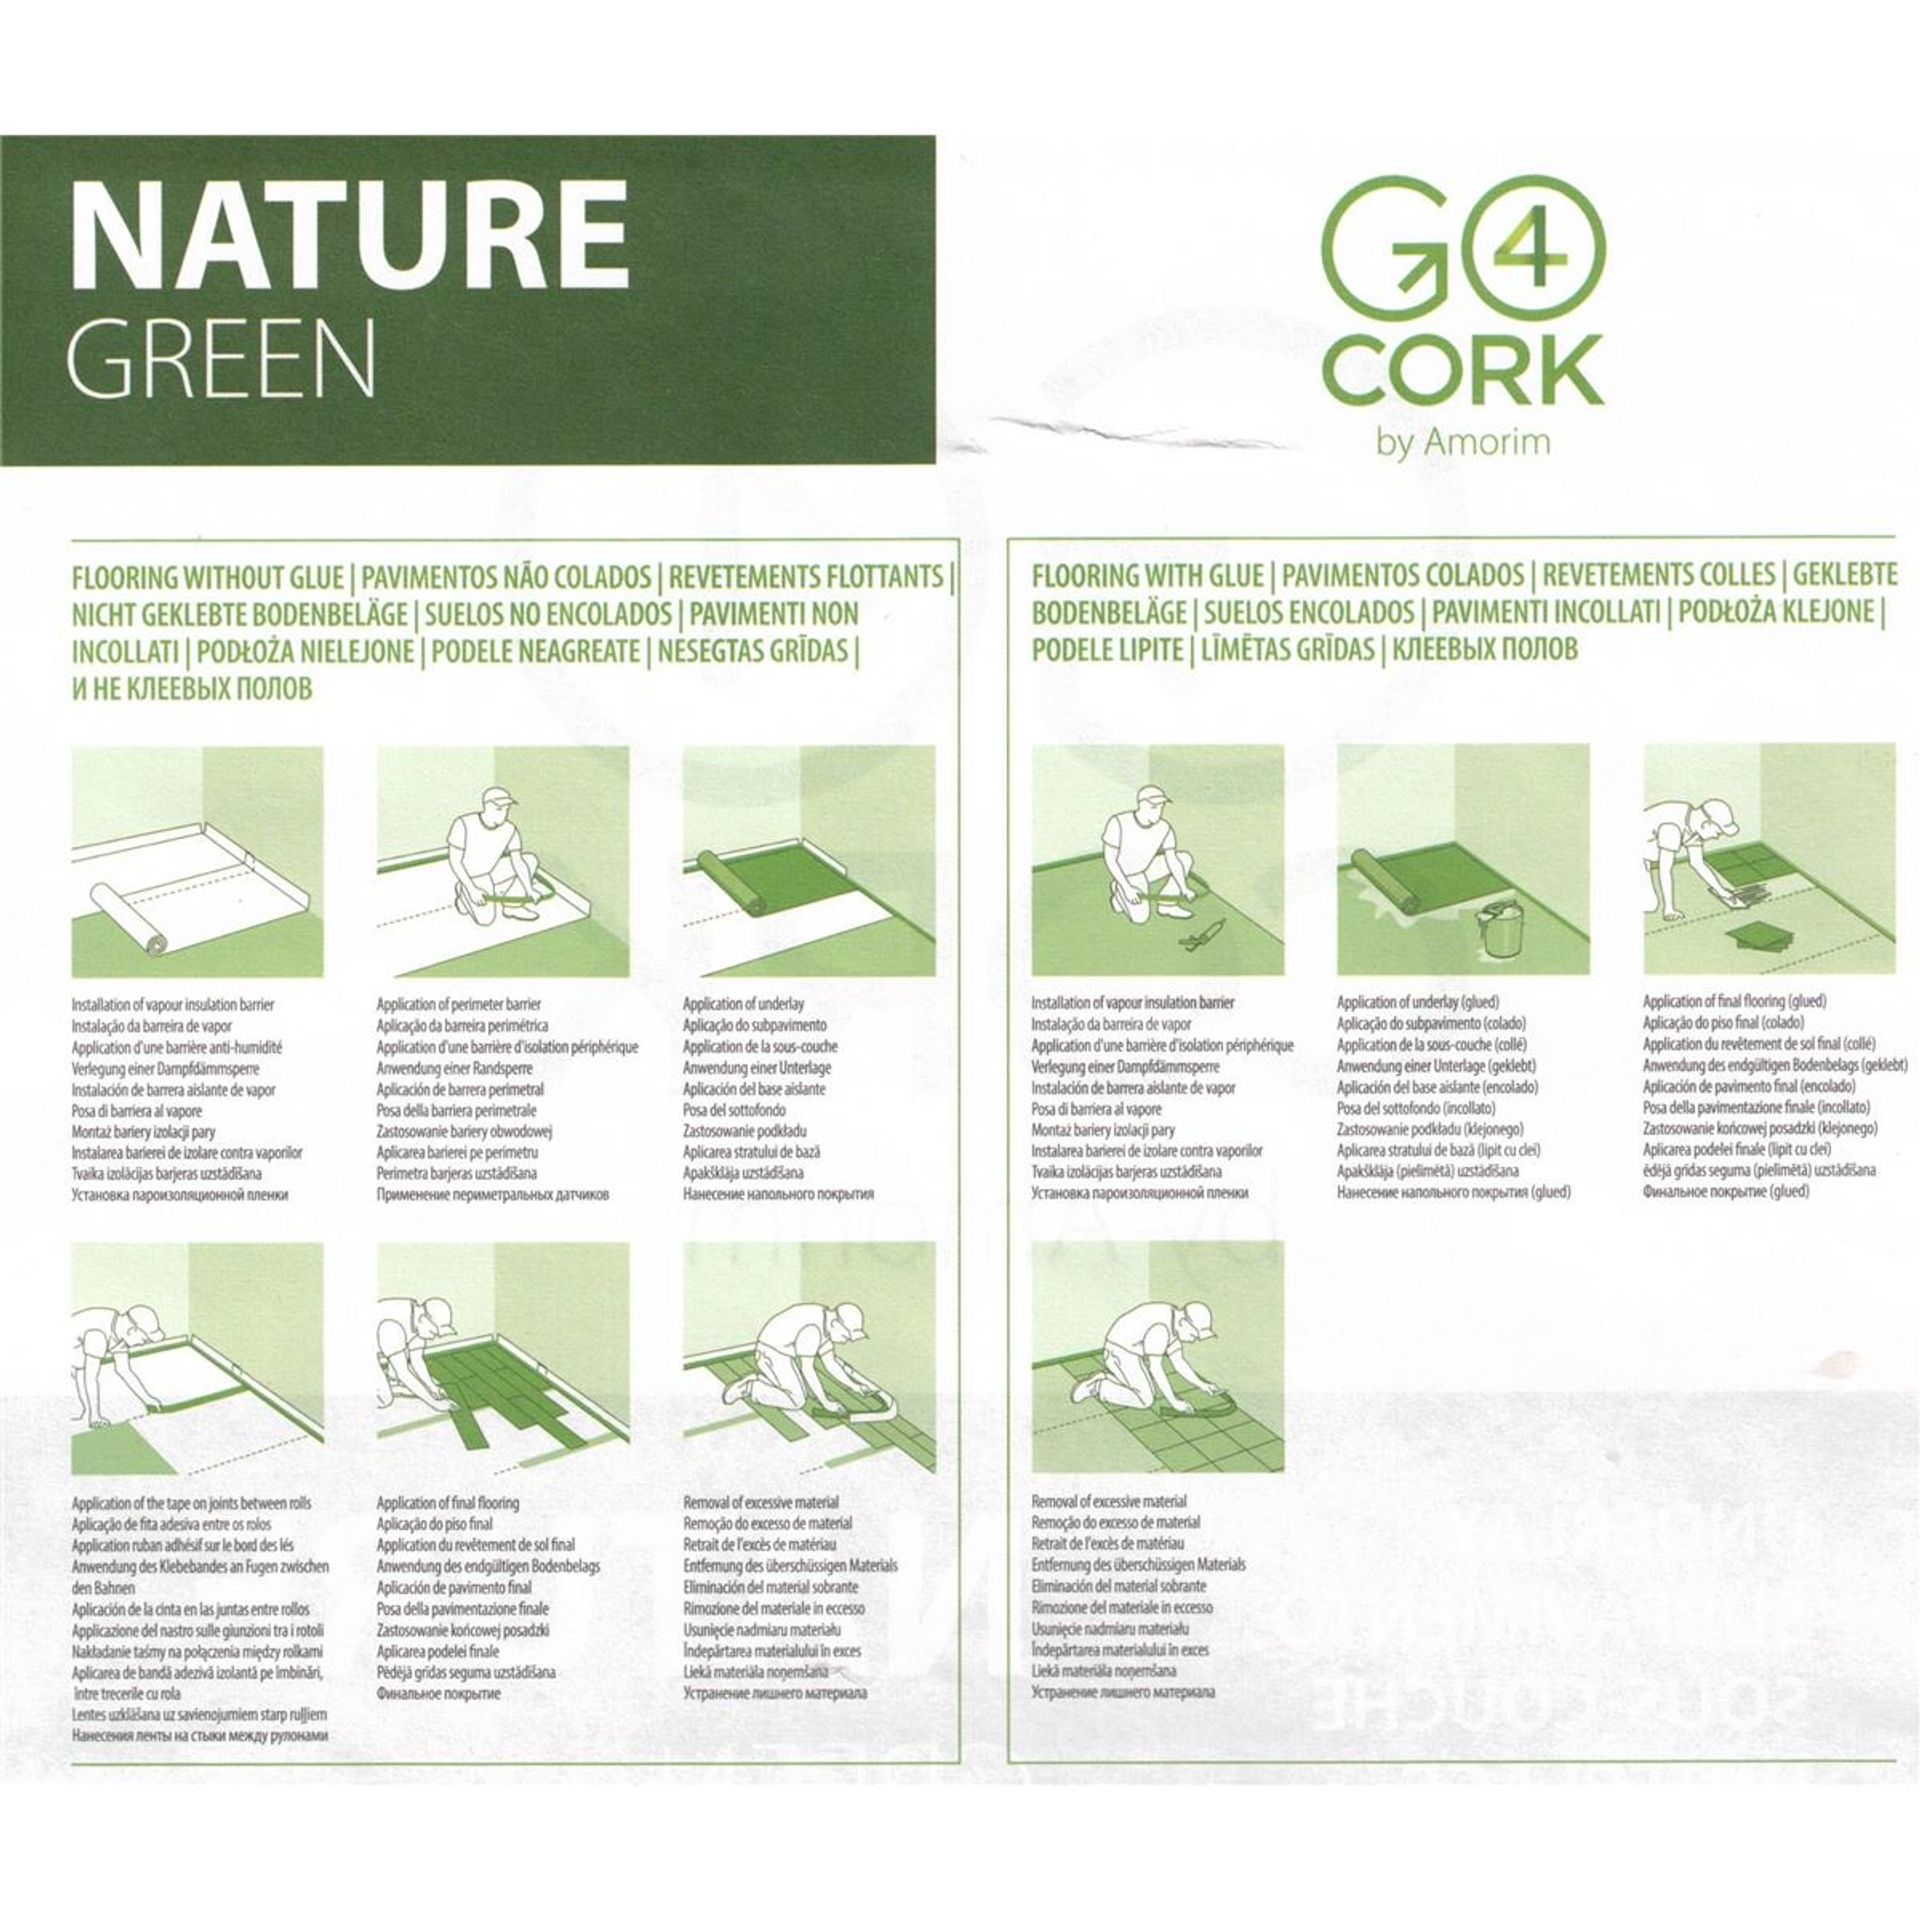 Rollenkork Nature Green Korkunterlage - Für umweltbewusste Anwender, Material: Kork, 100% natürlich und recycelbar.Trittschallverbesserung: 